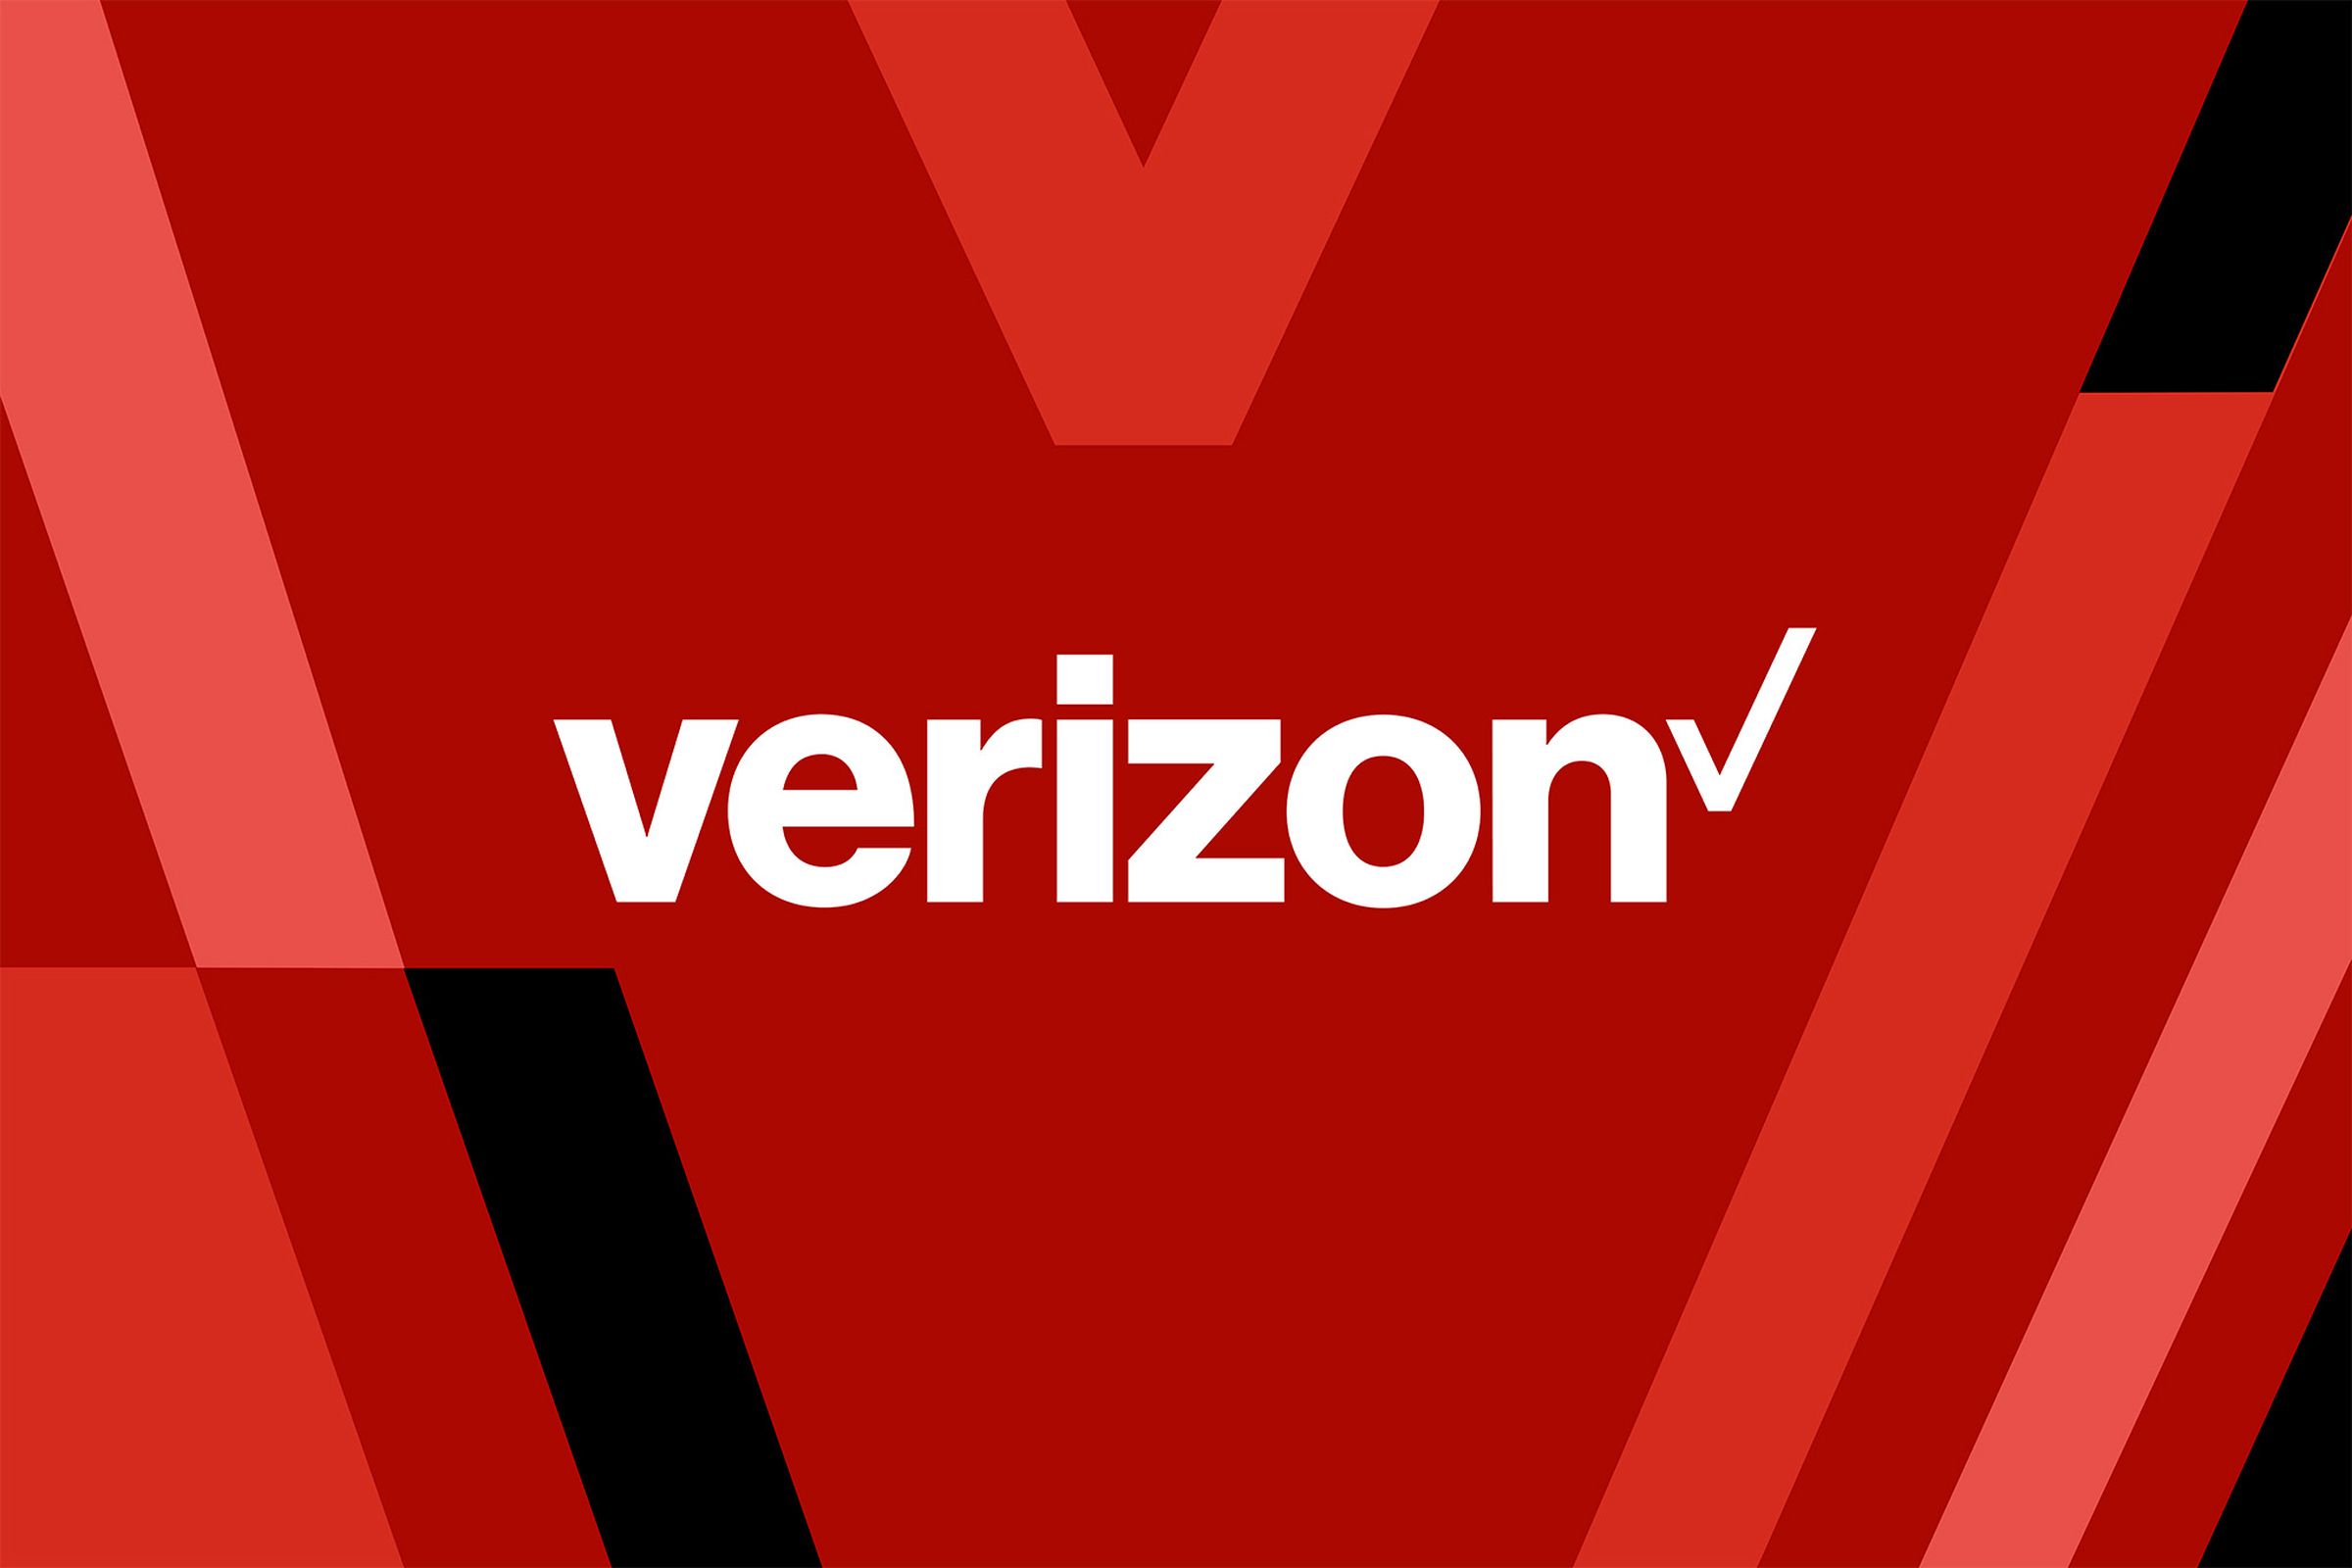 Ilustrasi logo Verizon dengan latar belakang merah dan hitam